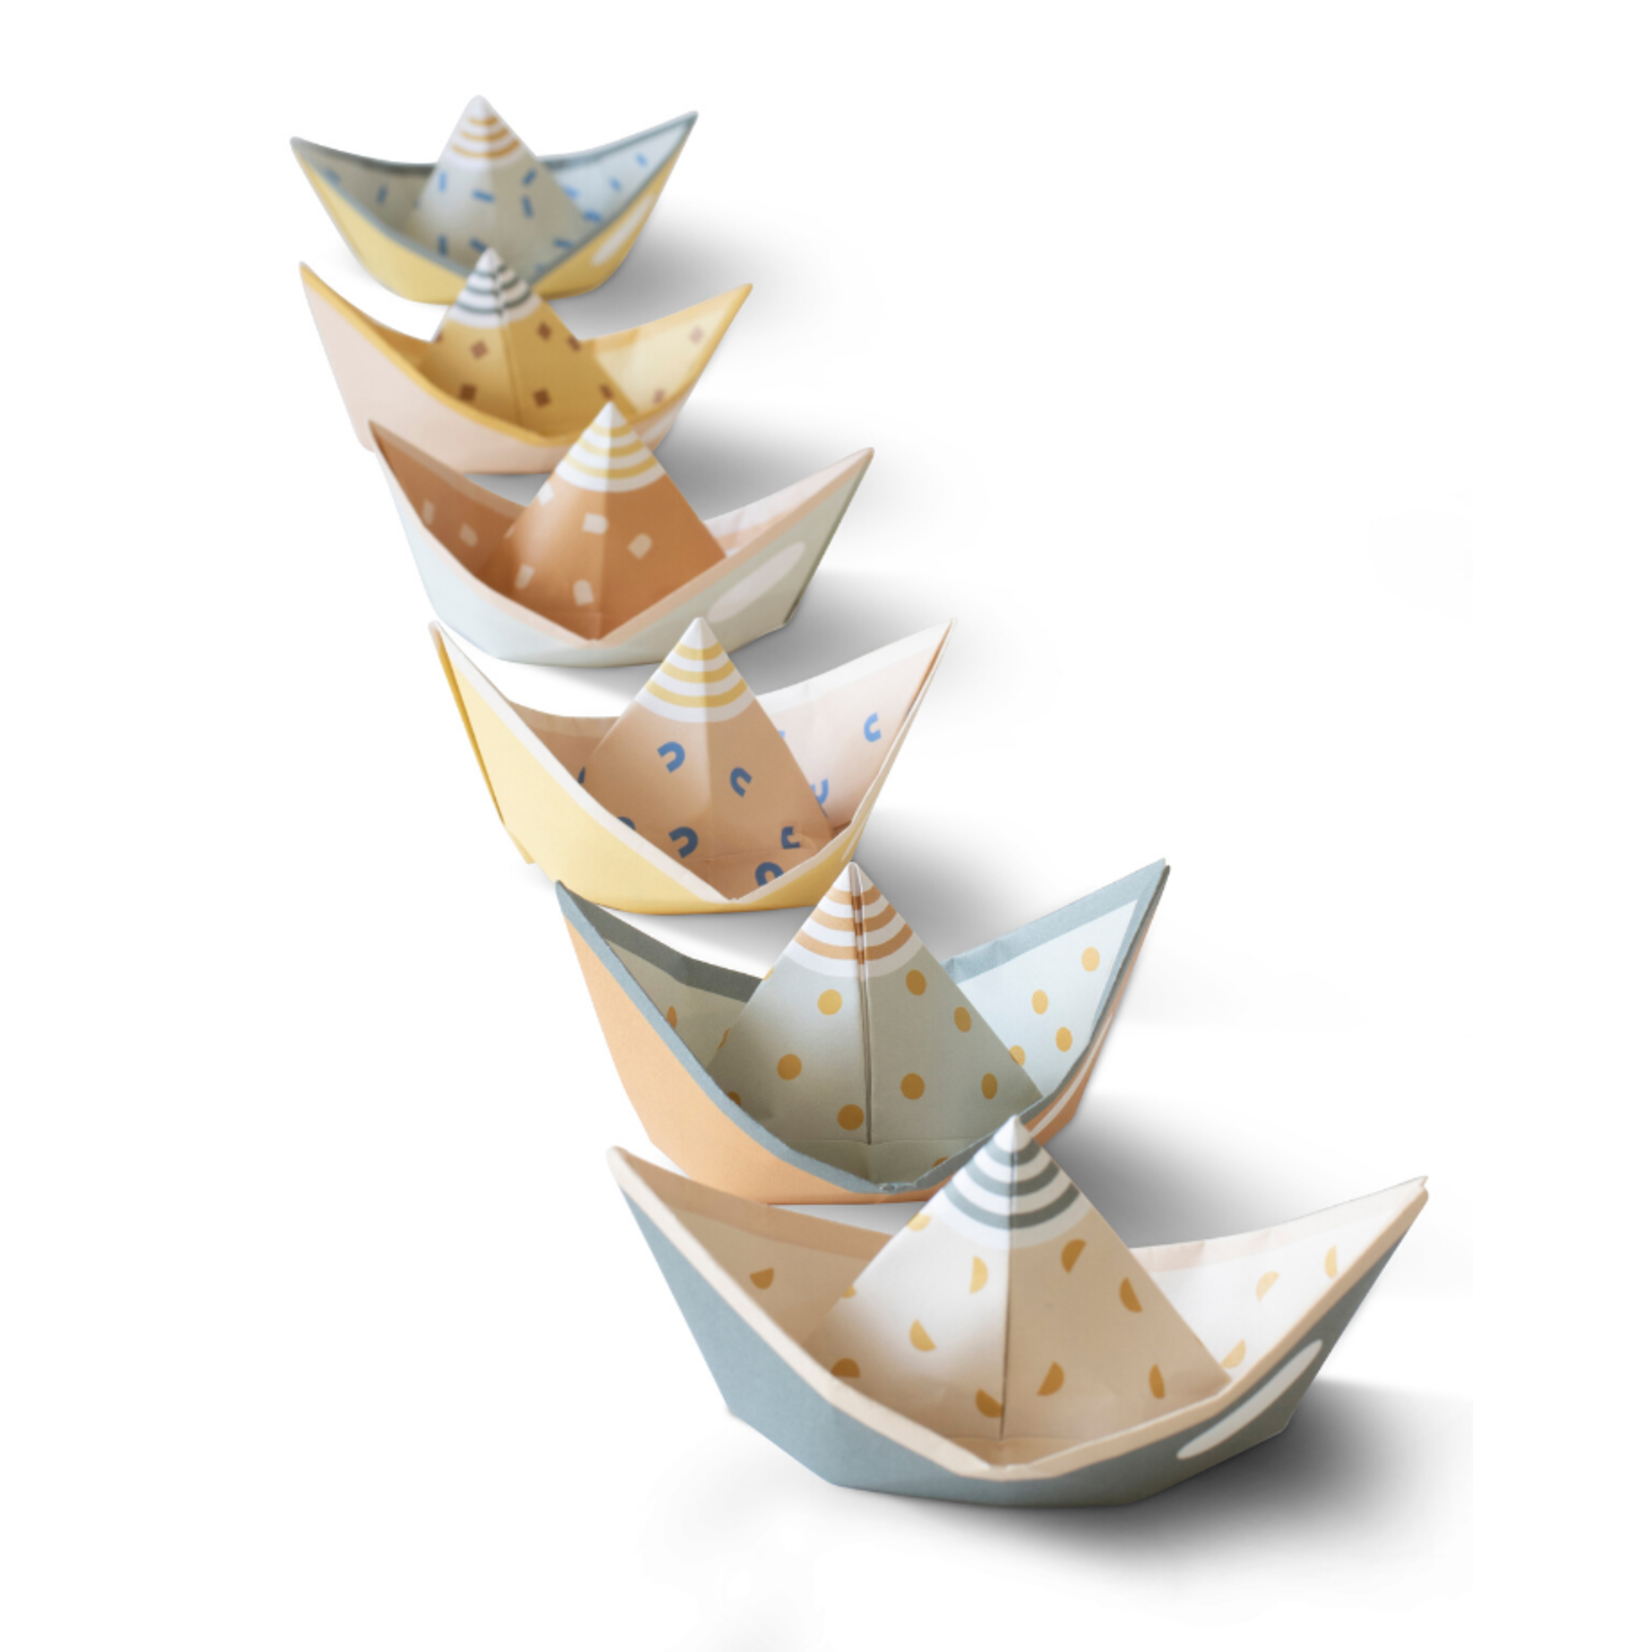 jurianne matter jurianne matter - segel  folding boats